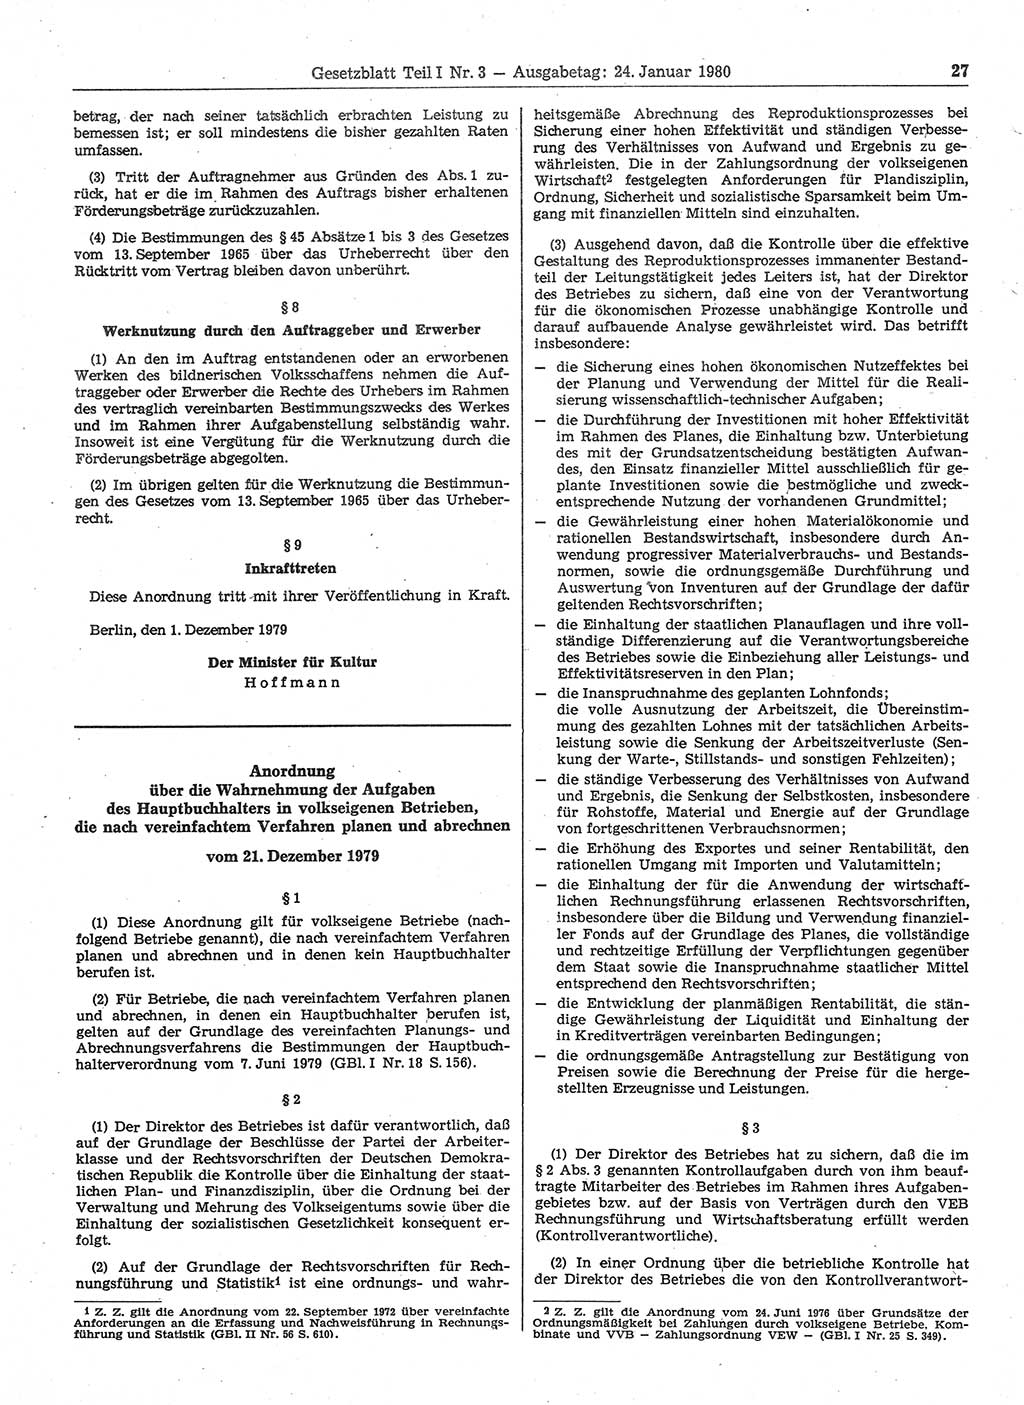 Gesetzblatt (GBl.) der Deutschen Demokratischen Republik (DDR) Teil Ⅰ 1980, Seite 27 (GBl. DDR Ⅰ 1980, S. 27)